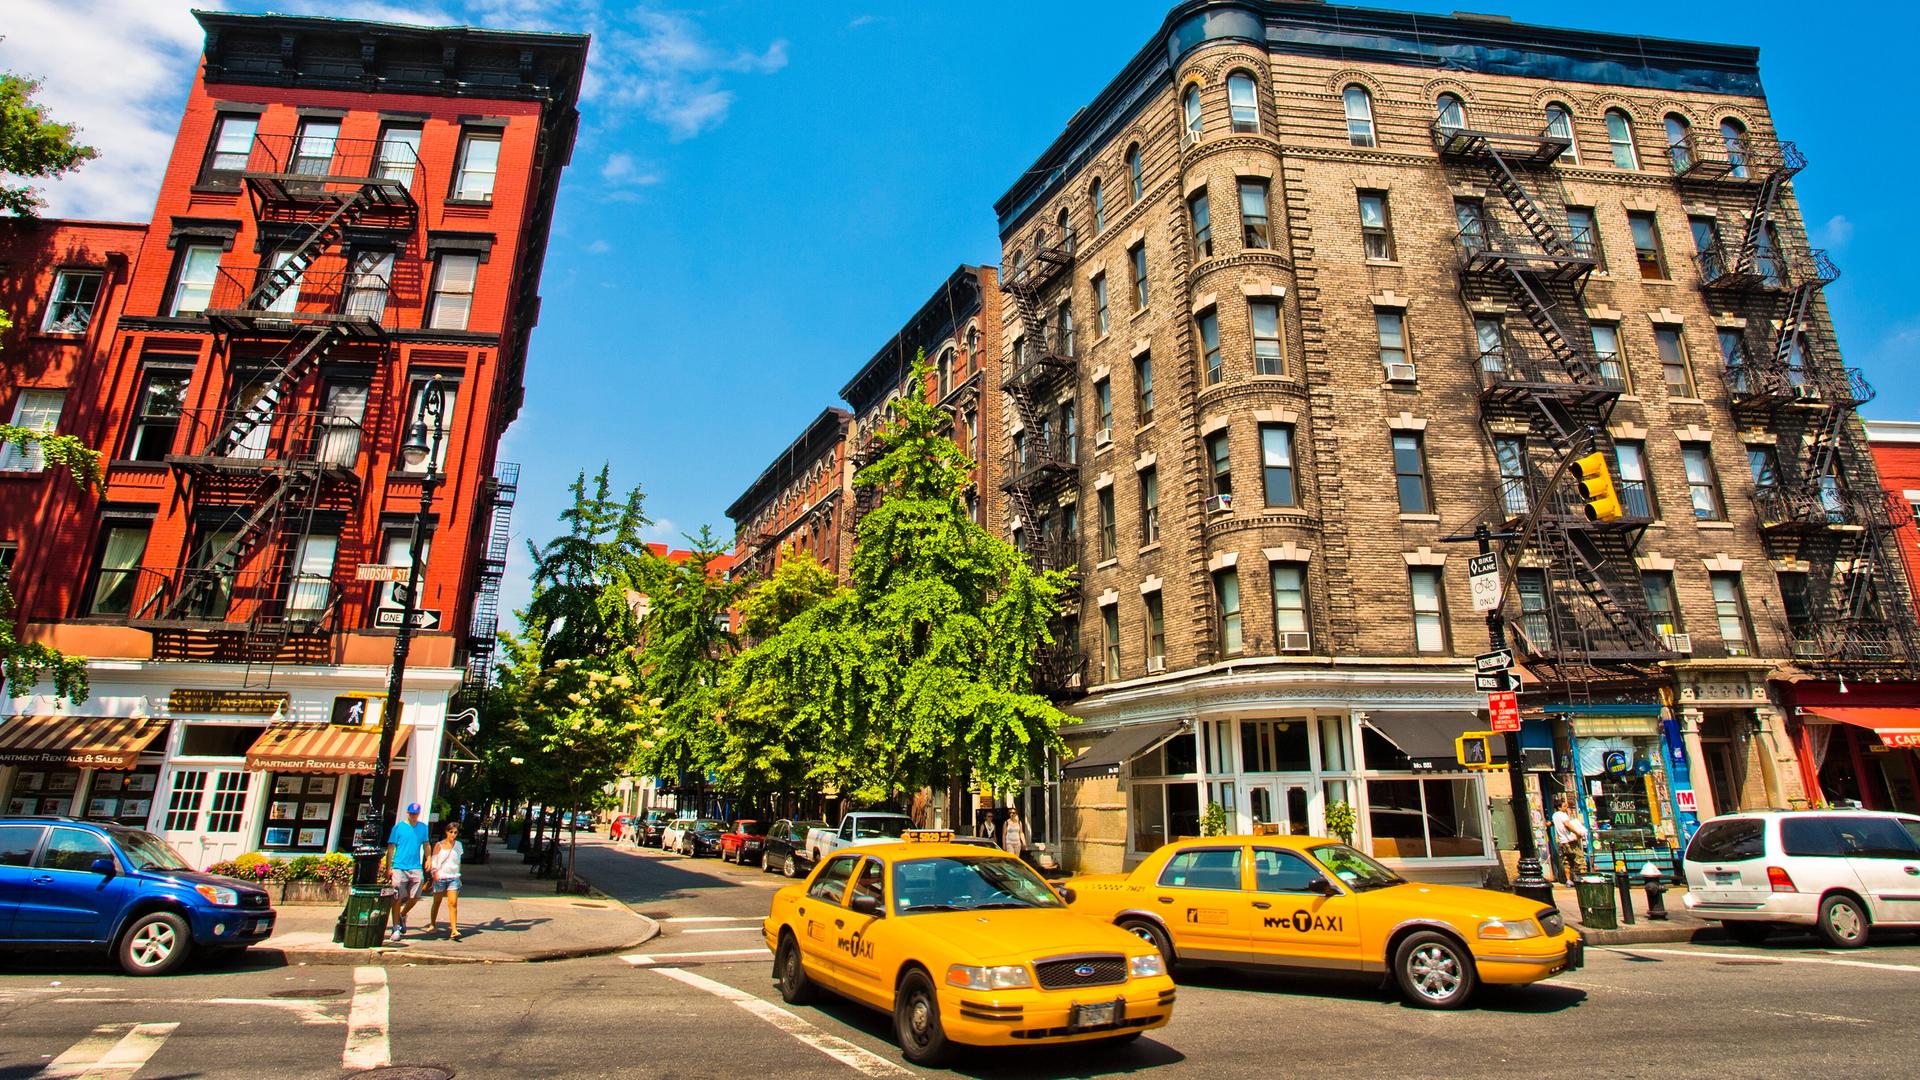 Hudson Street, West Village, Manhattan, New York City, USA, United States.